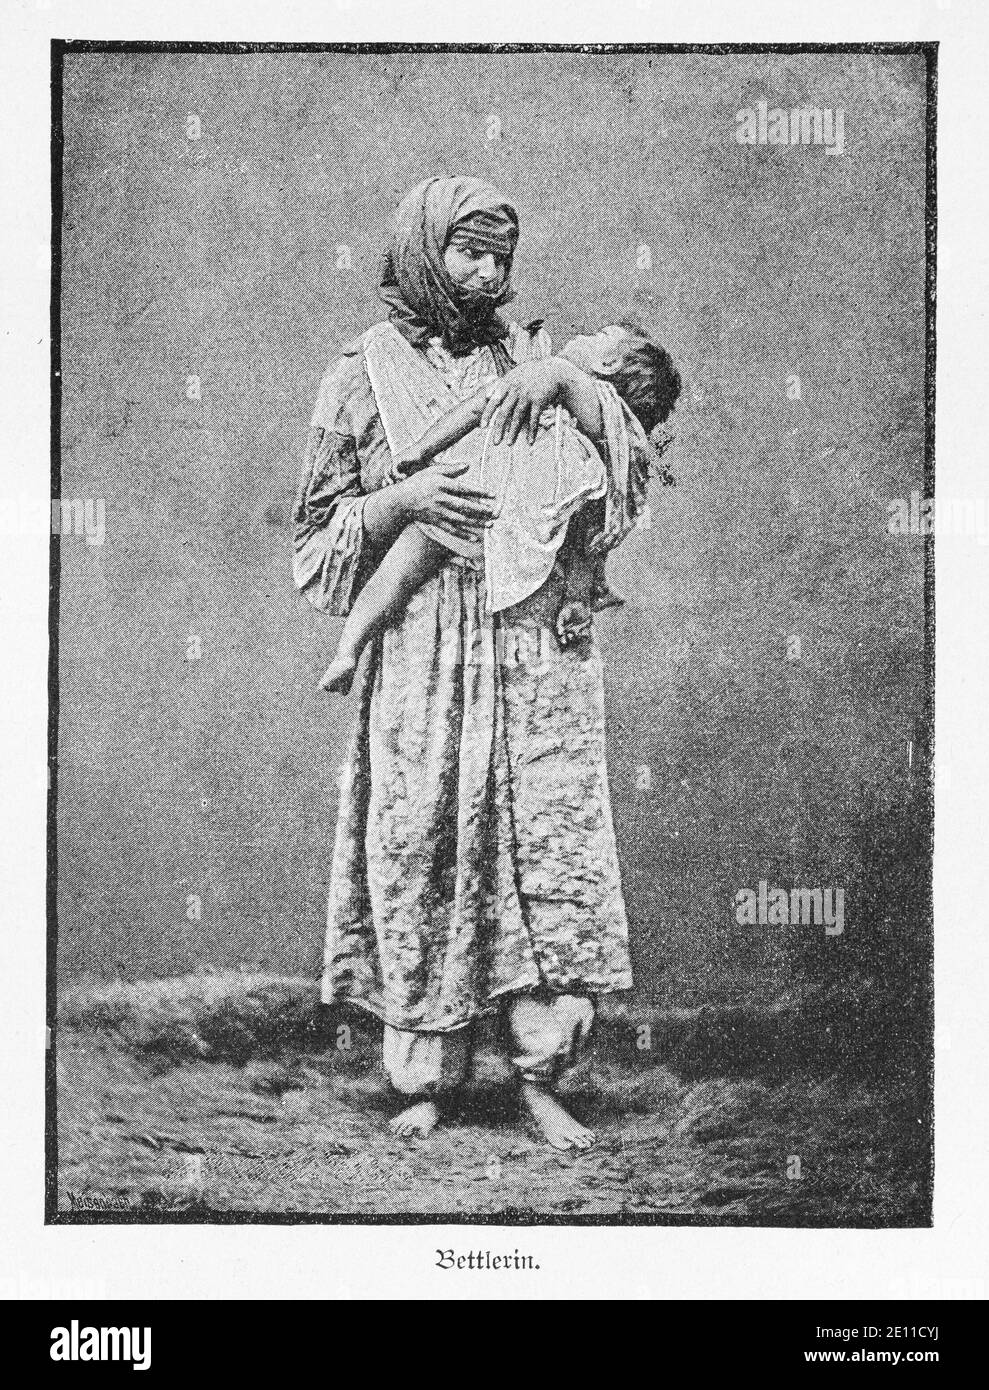 'Bettlerin', femme mendiante debout avec son petit enfant dans les bras, Constantinople, Turquie, illustrations de 'Die Hauptstädte der Welt', 1897 Banque D'Images